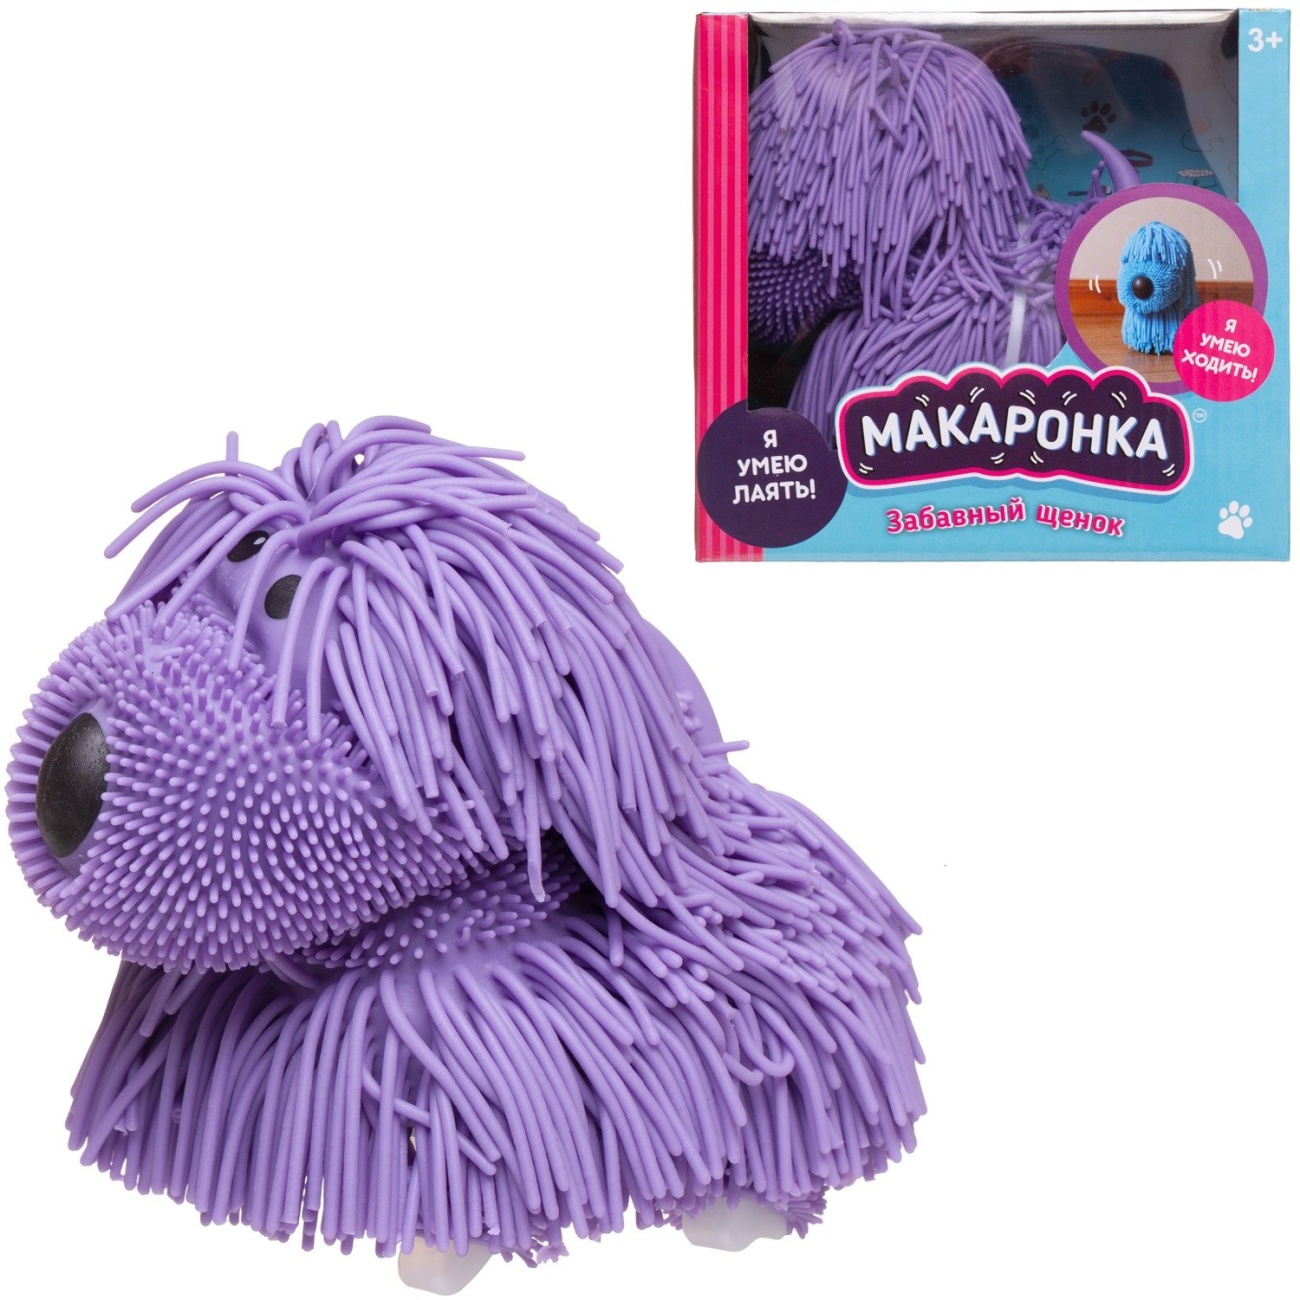 Интерактивная игрушка ABtoys Макаронка Собака фиолетовая PT-01845